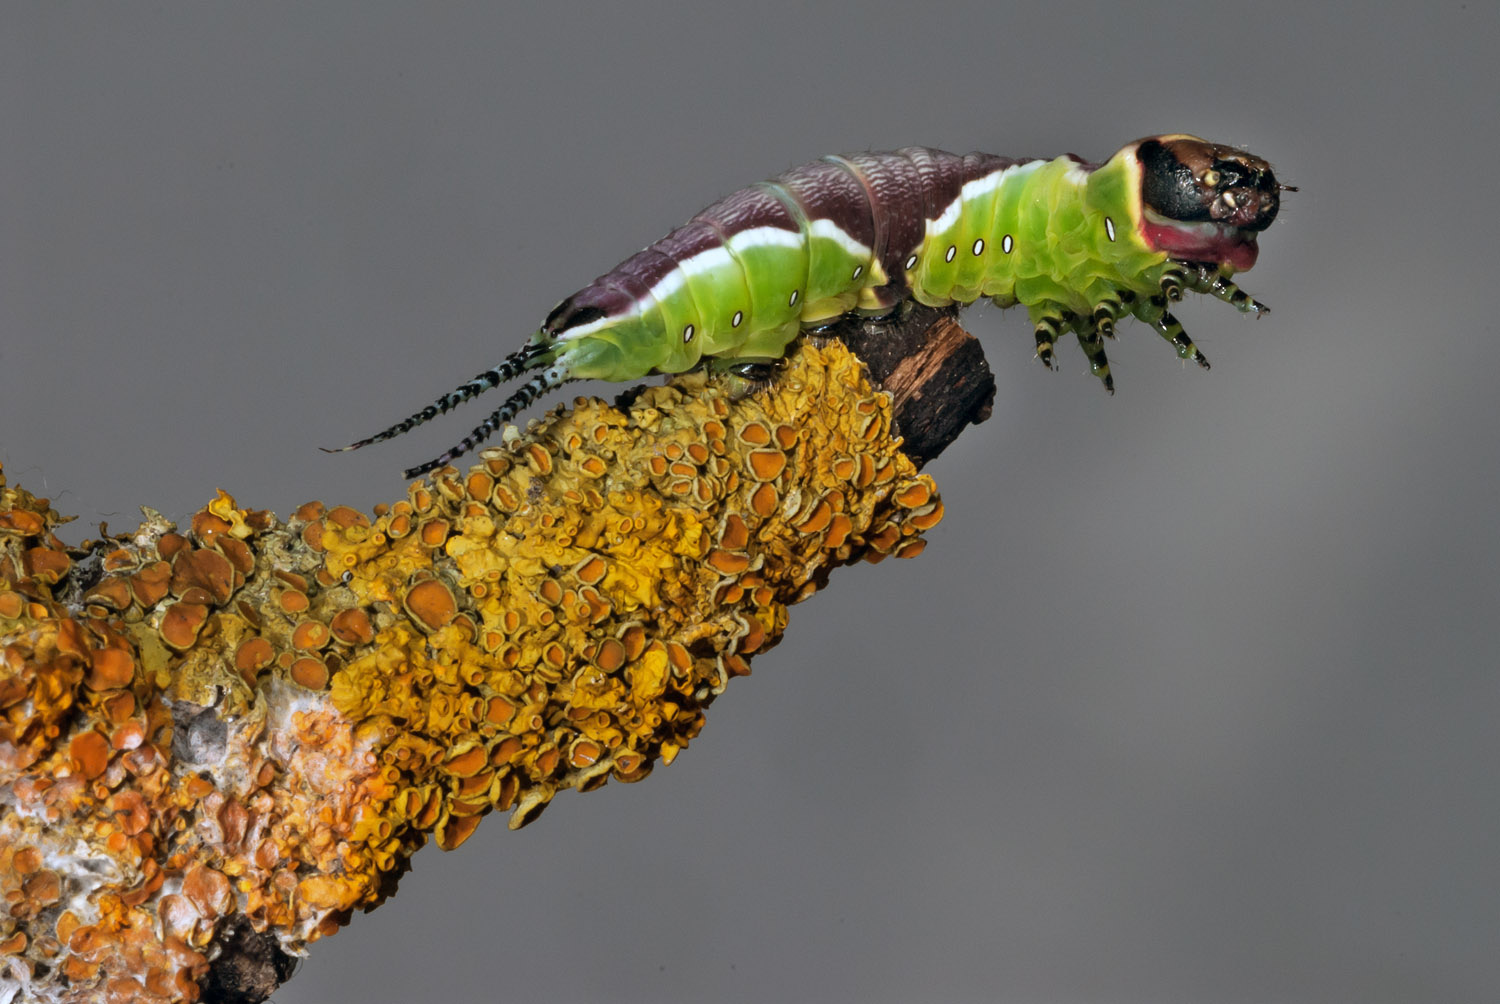 puss Moth caterpillar after the 4th ecdysis